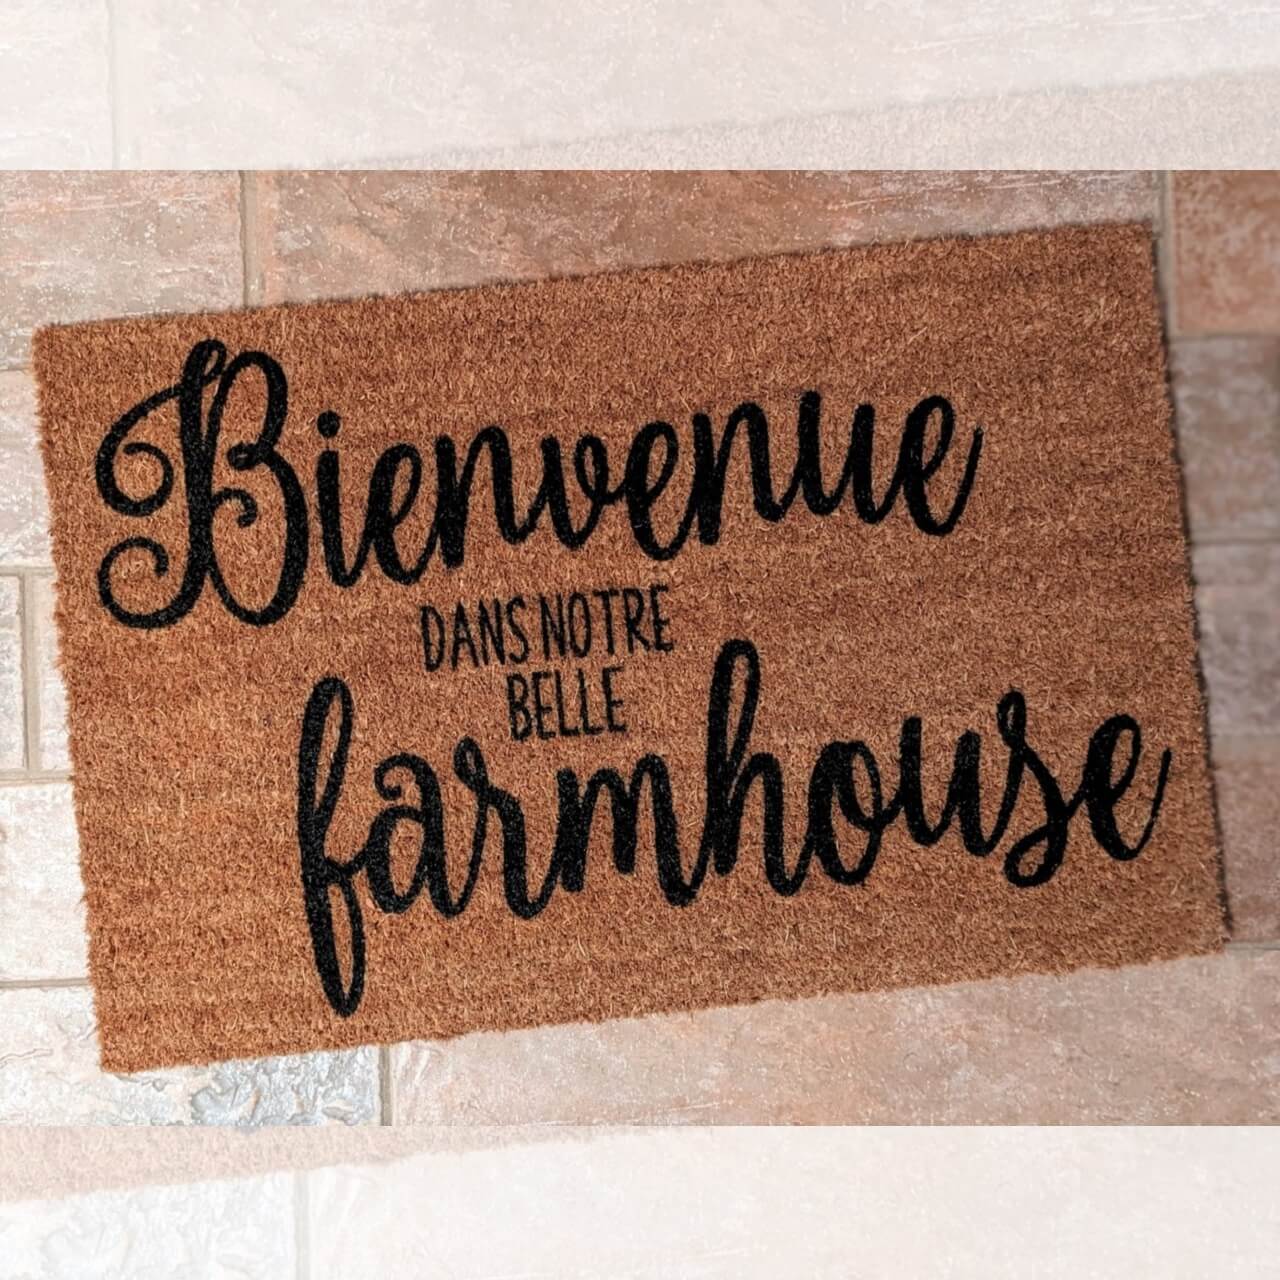 Paillasson Farmhouse Bienvenue dans notre belle Farmhouse Design extérieur Exclusif